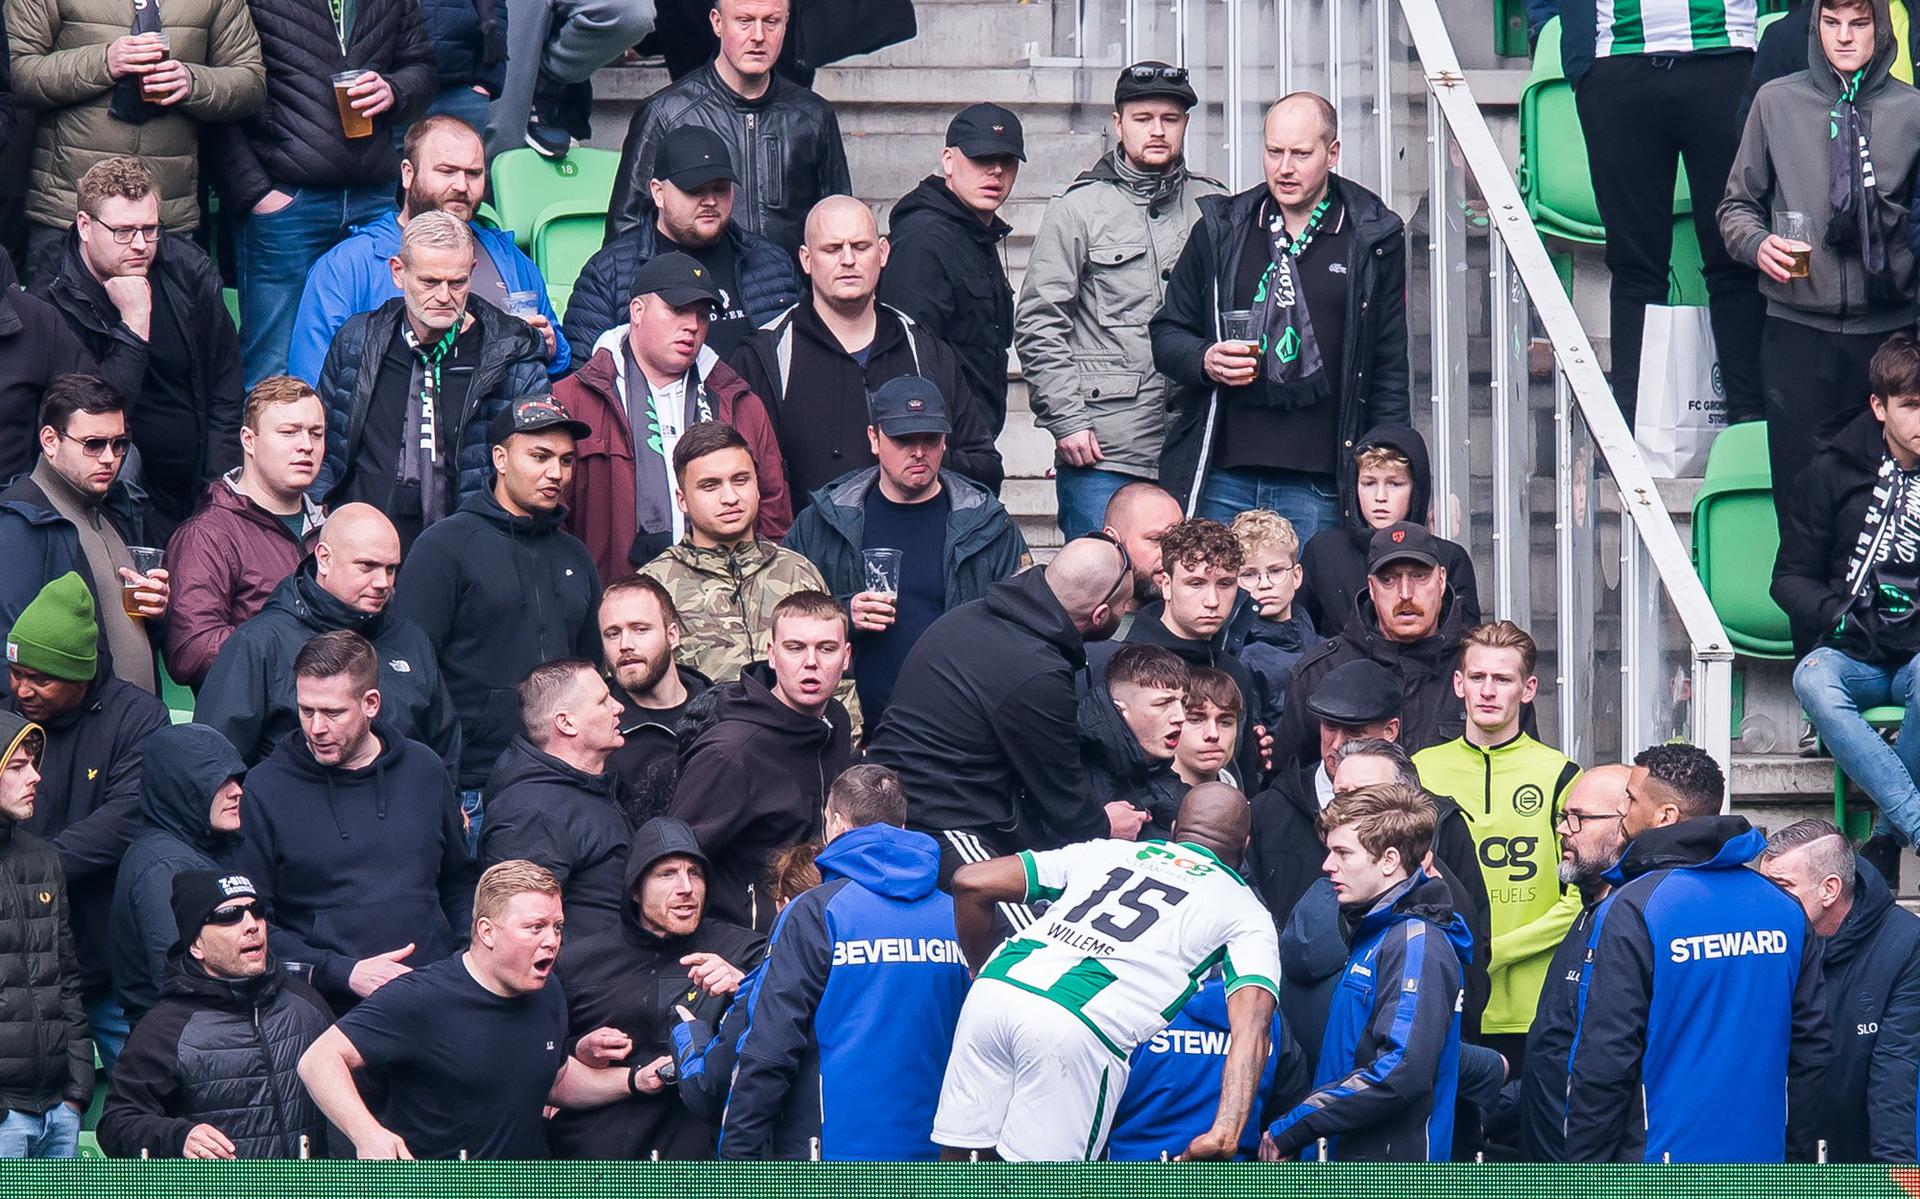 Tijdens de thuiswedstrijd tegen SC Heerenveen wil Jetro Willems de harde kern van FC Groningen tot rust manen. Hij kon het bekopen met een klap van een van de supporters.